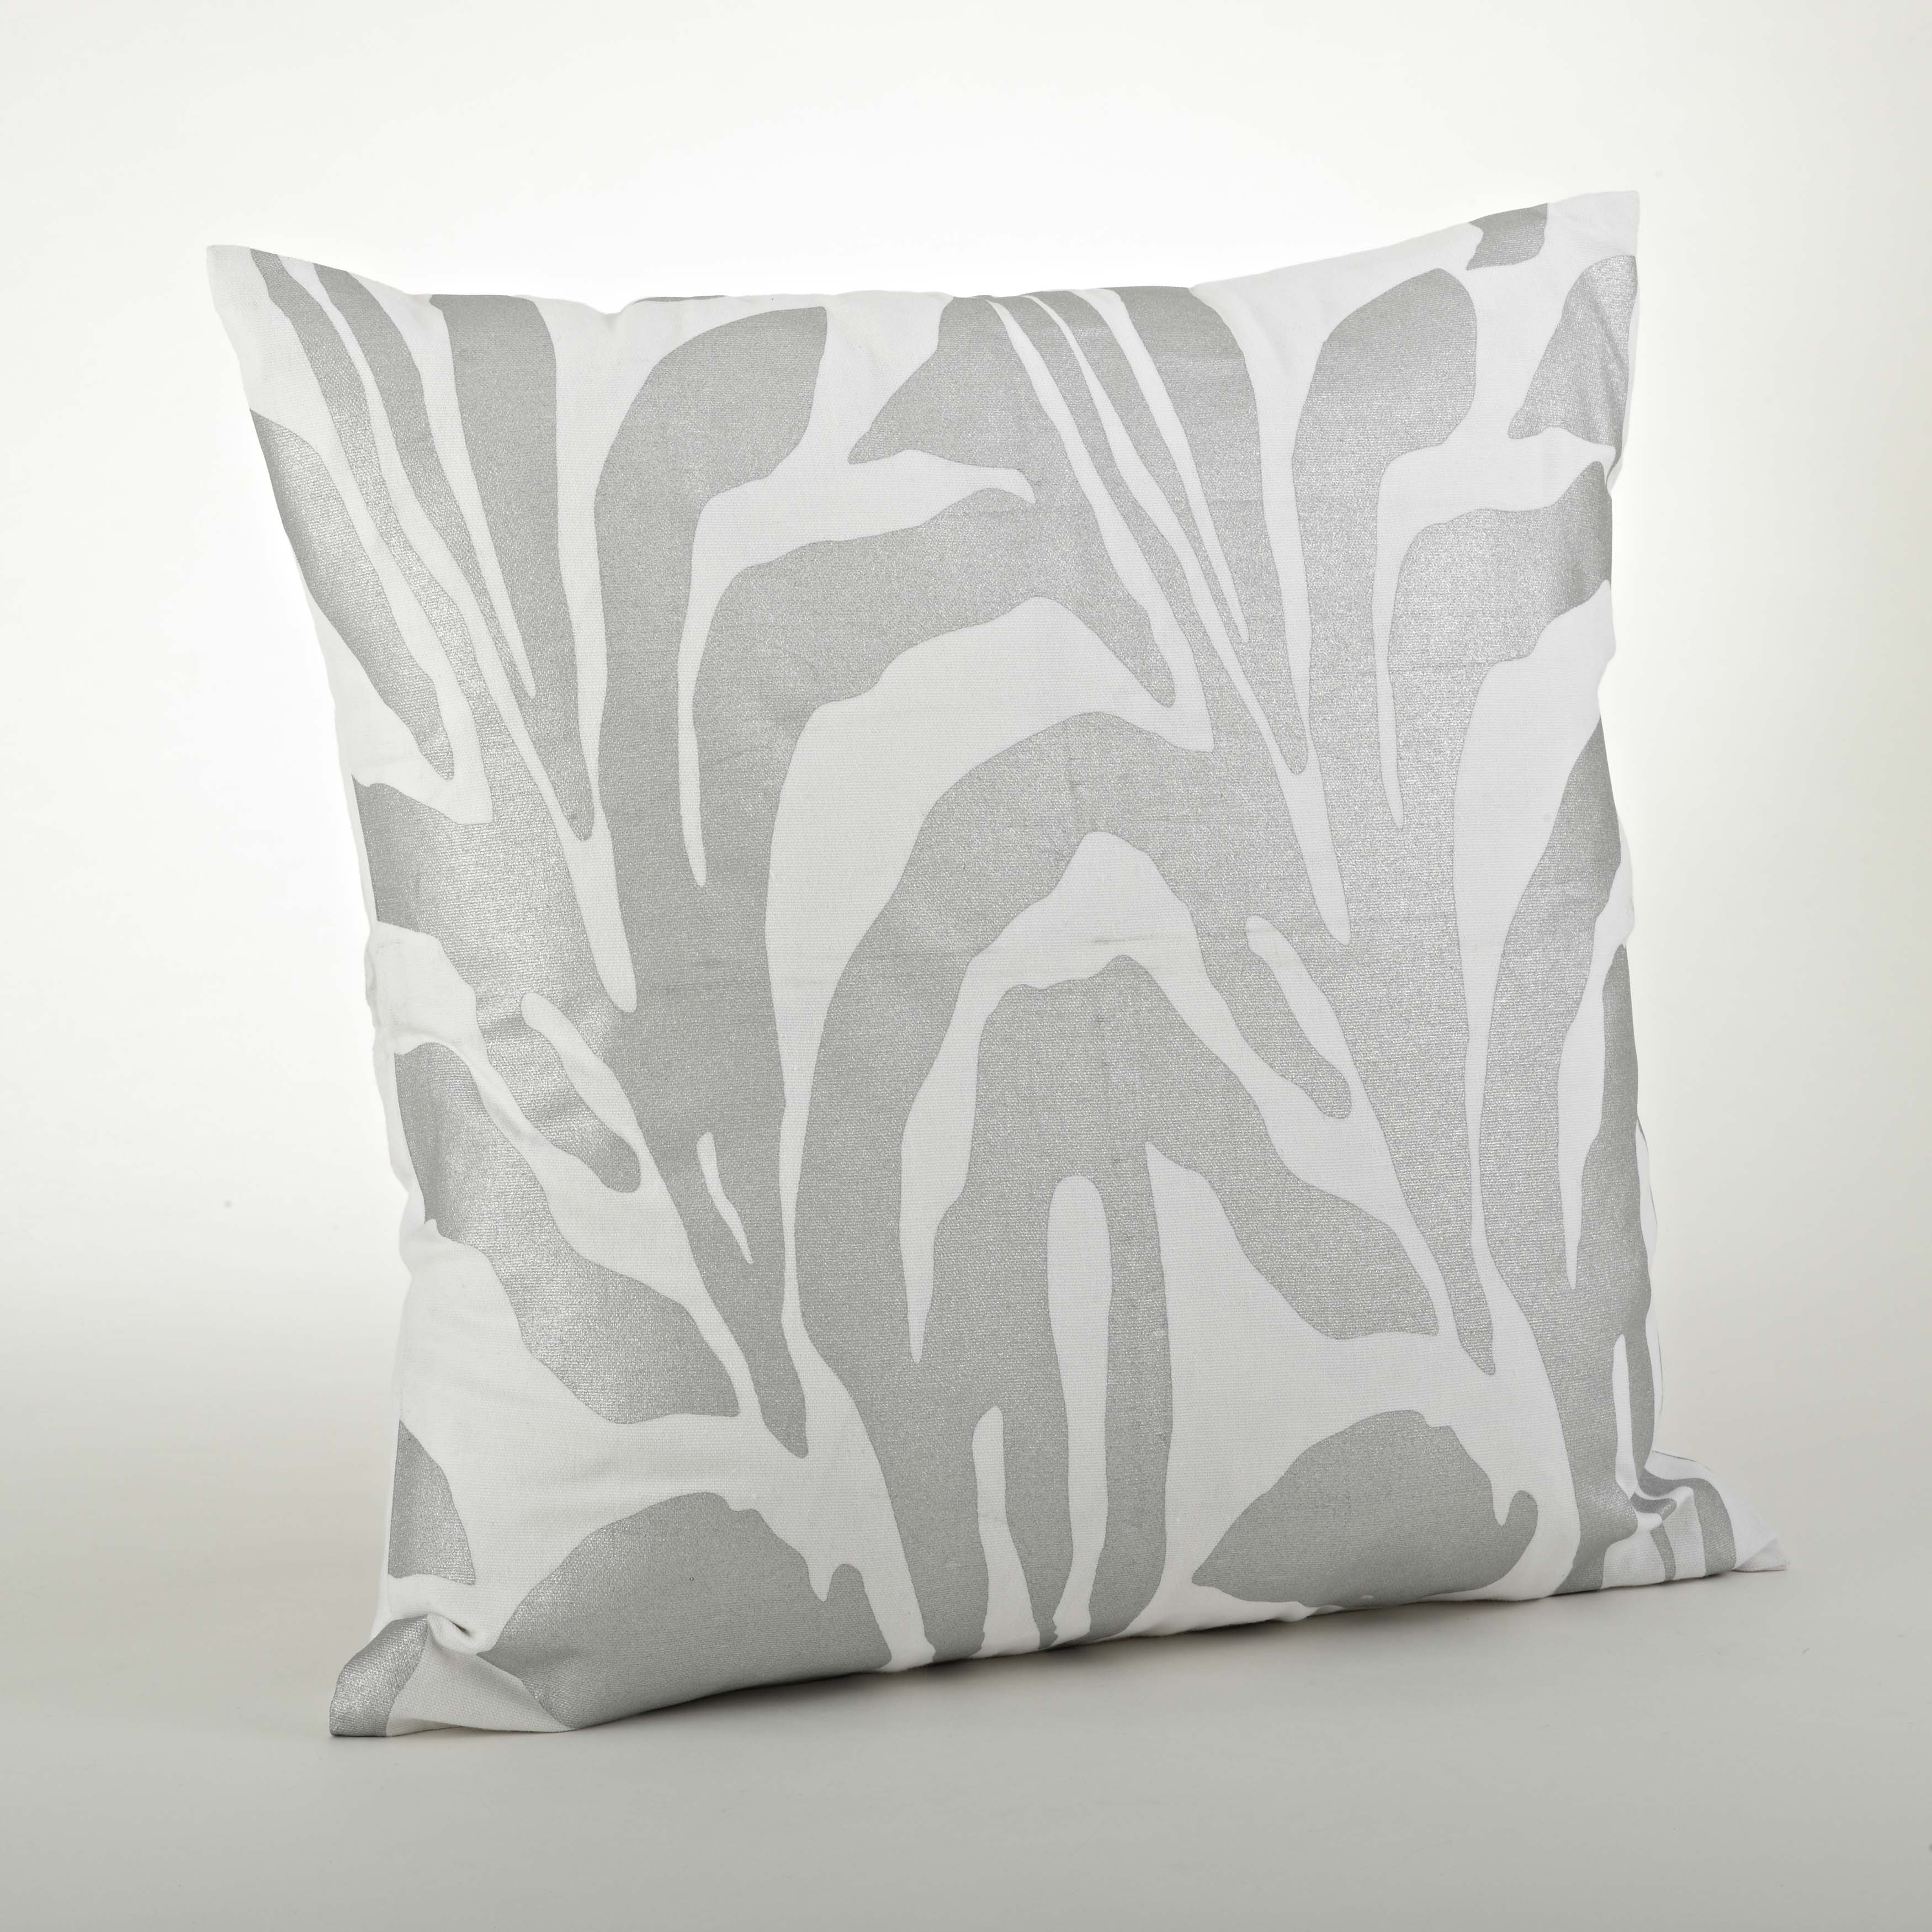 Animal Print Pillow   Filled   17574183   Shopping